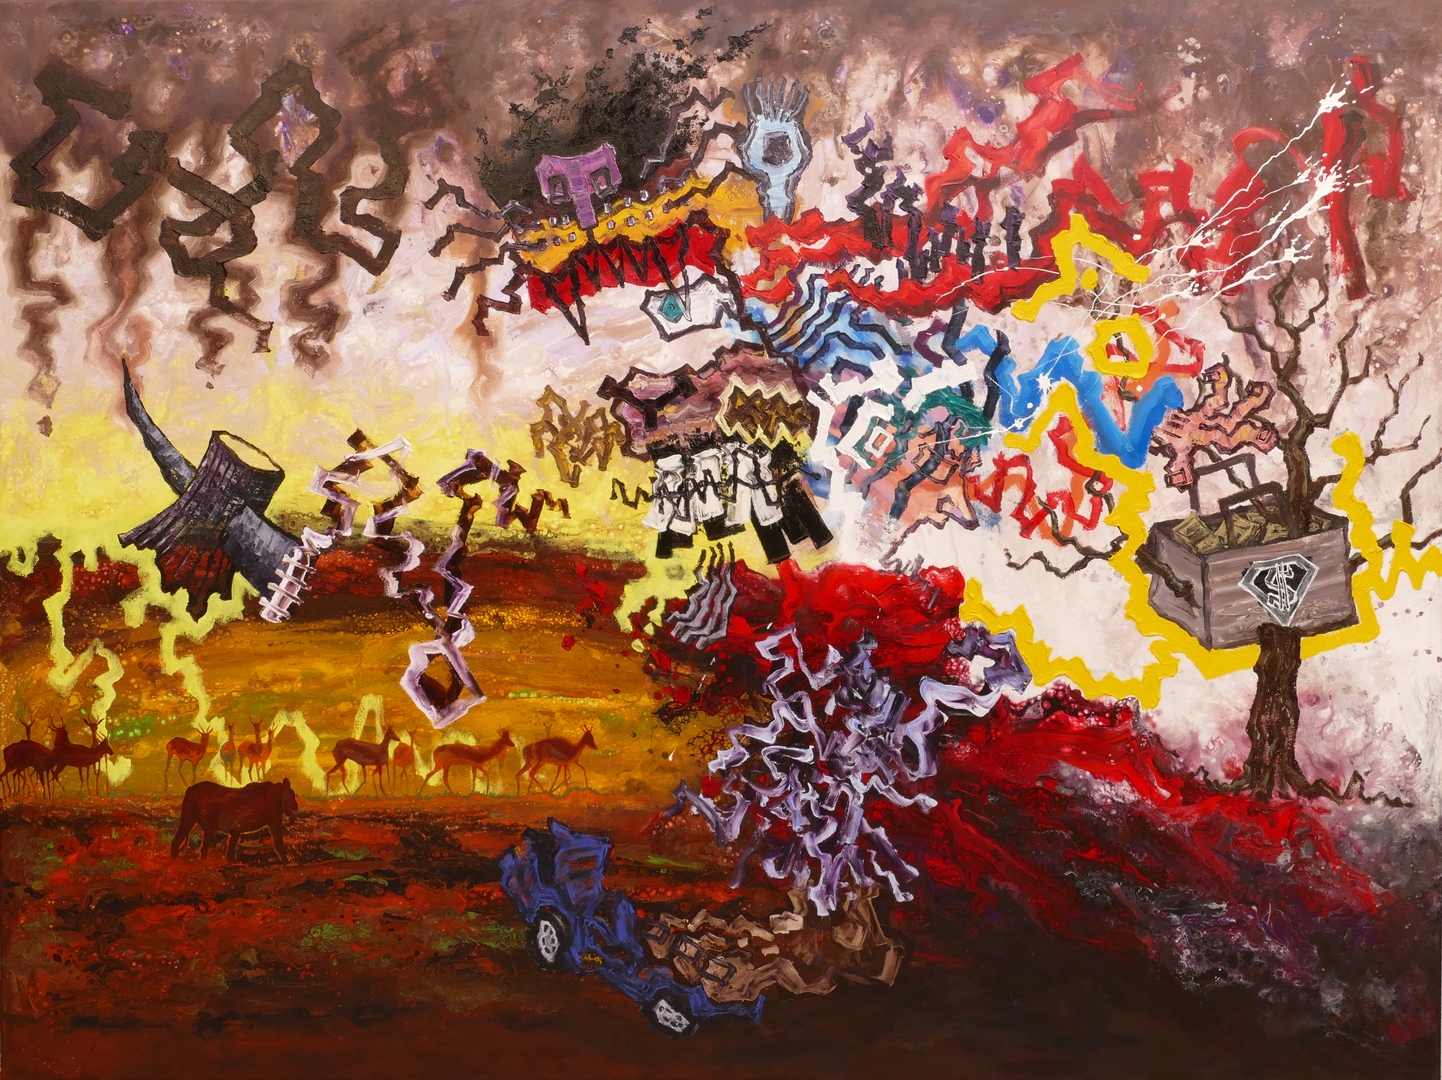 B, Der Sieg der Natur, 150x200cm, Öl ,Acryl auf Leinwand, 2020